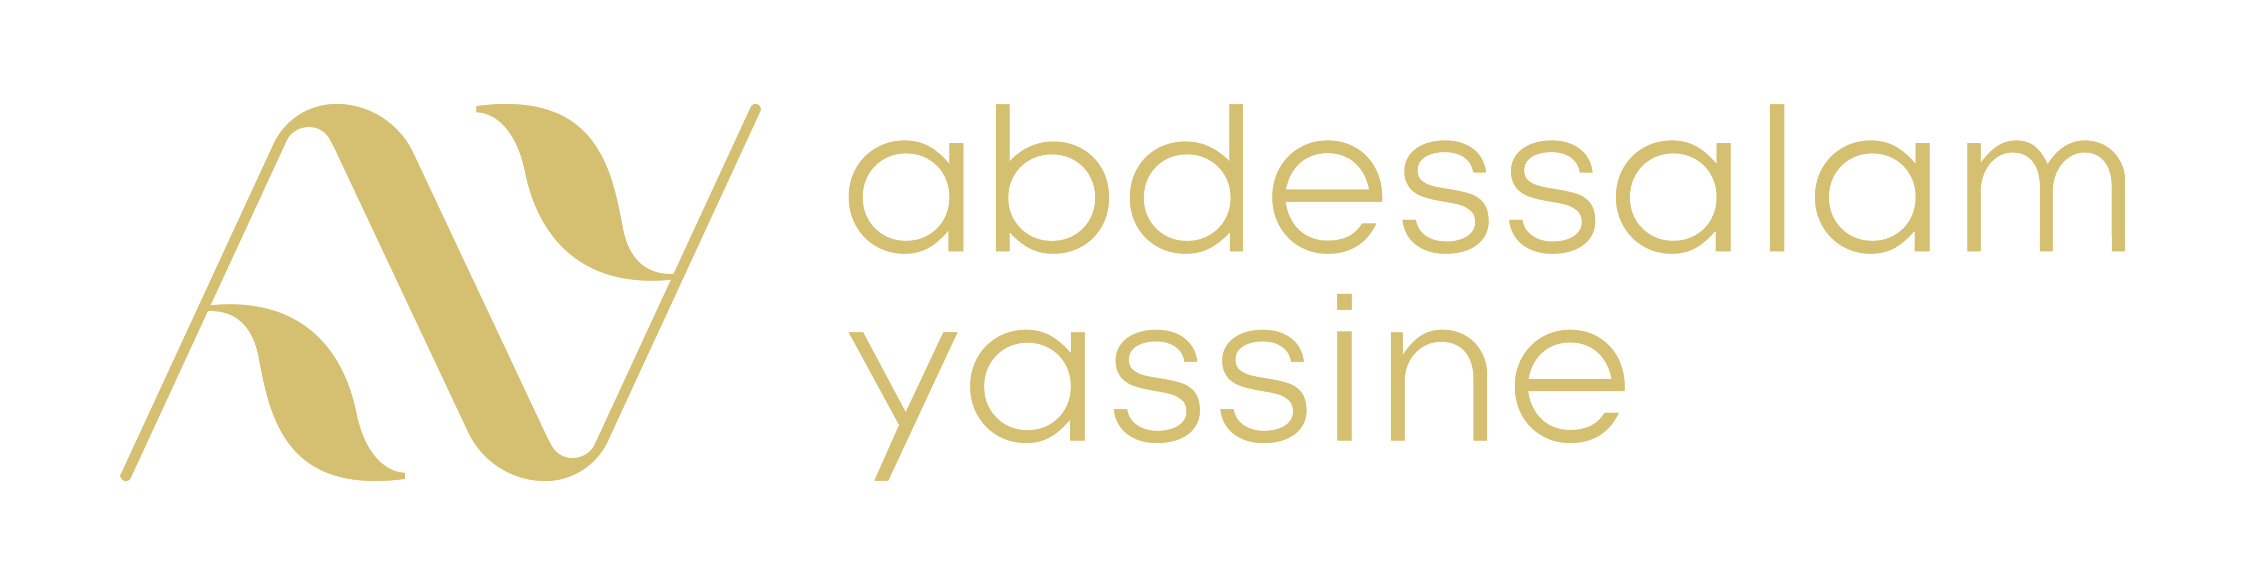 yassine logo